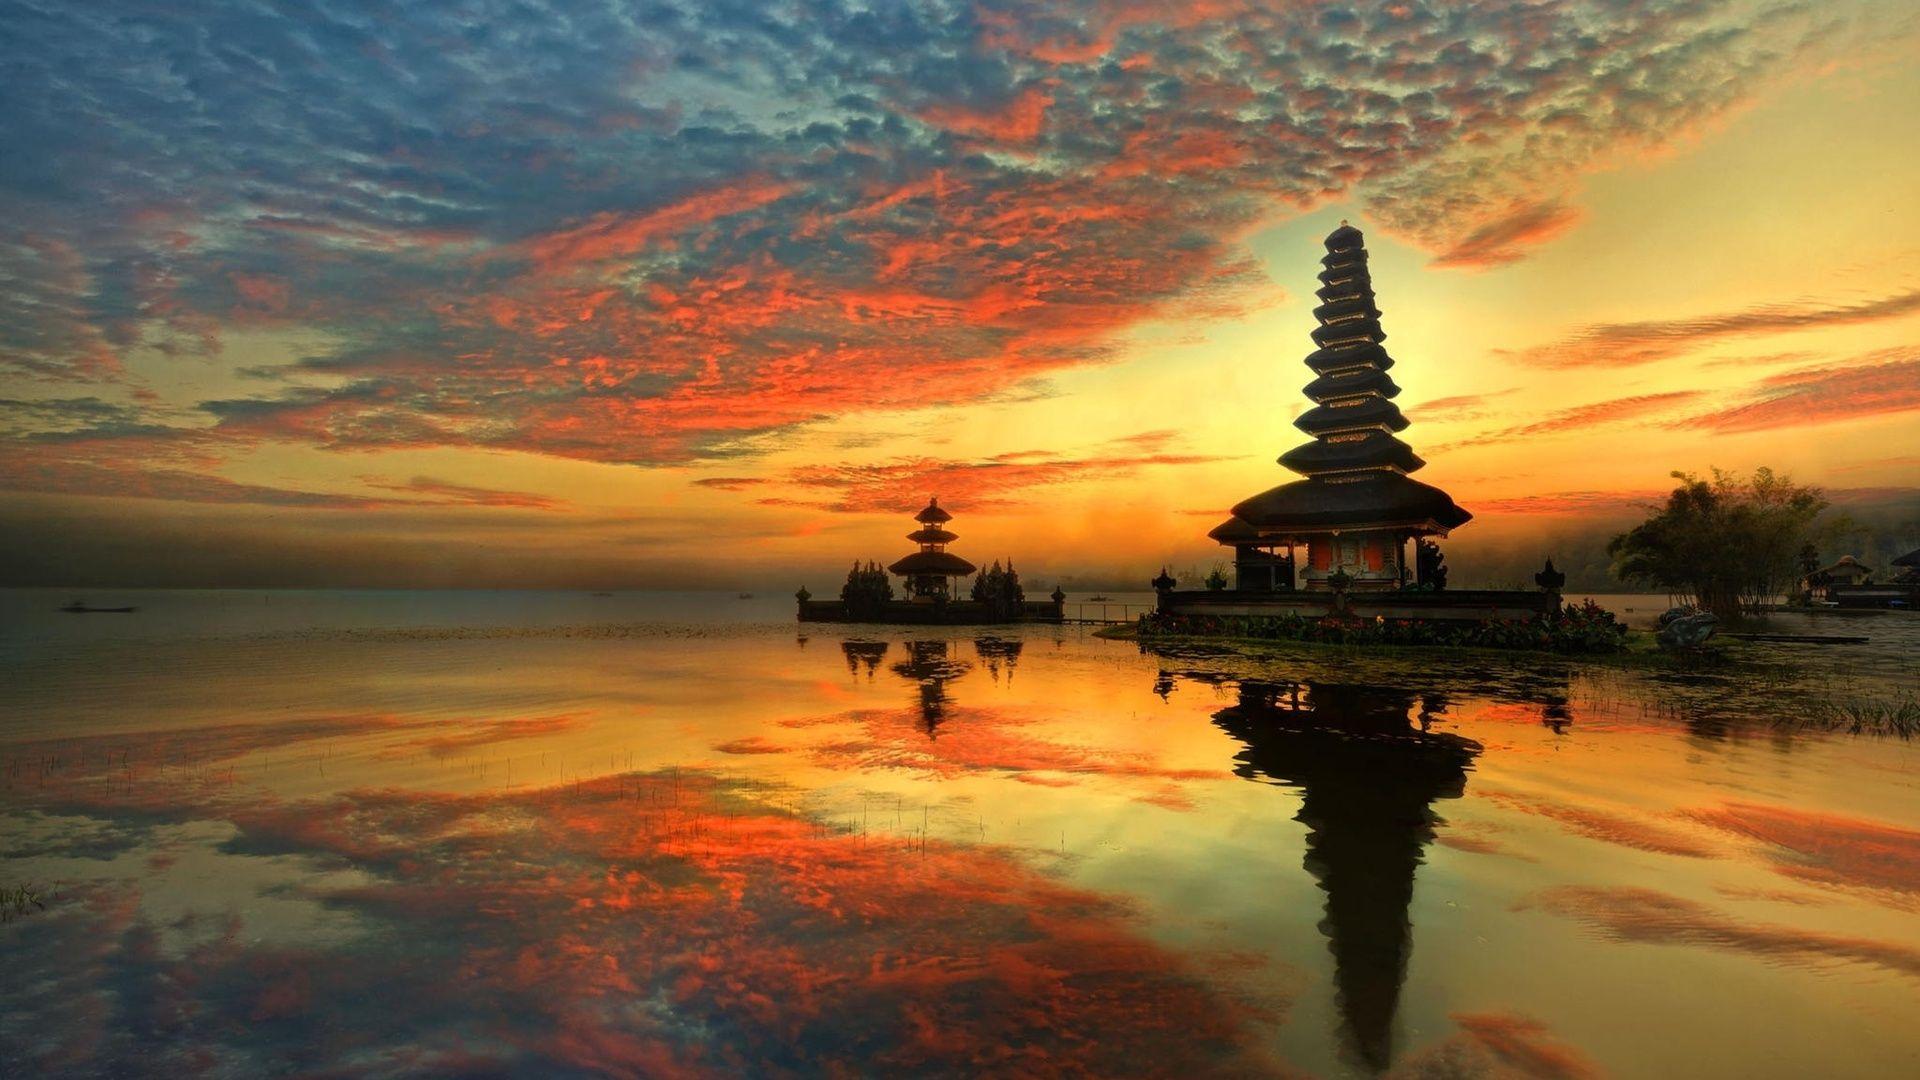 Capella Resort Bali